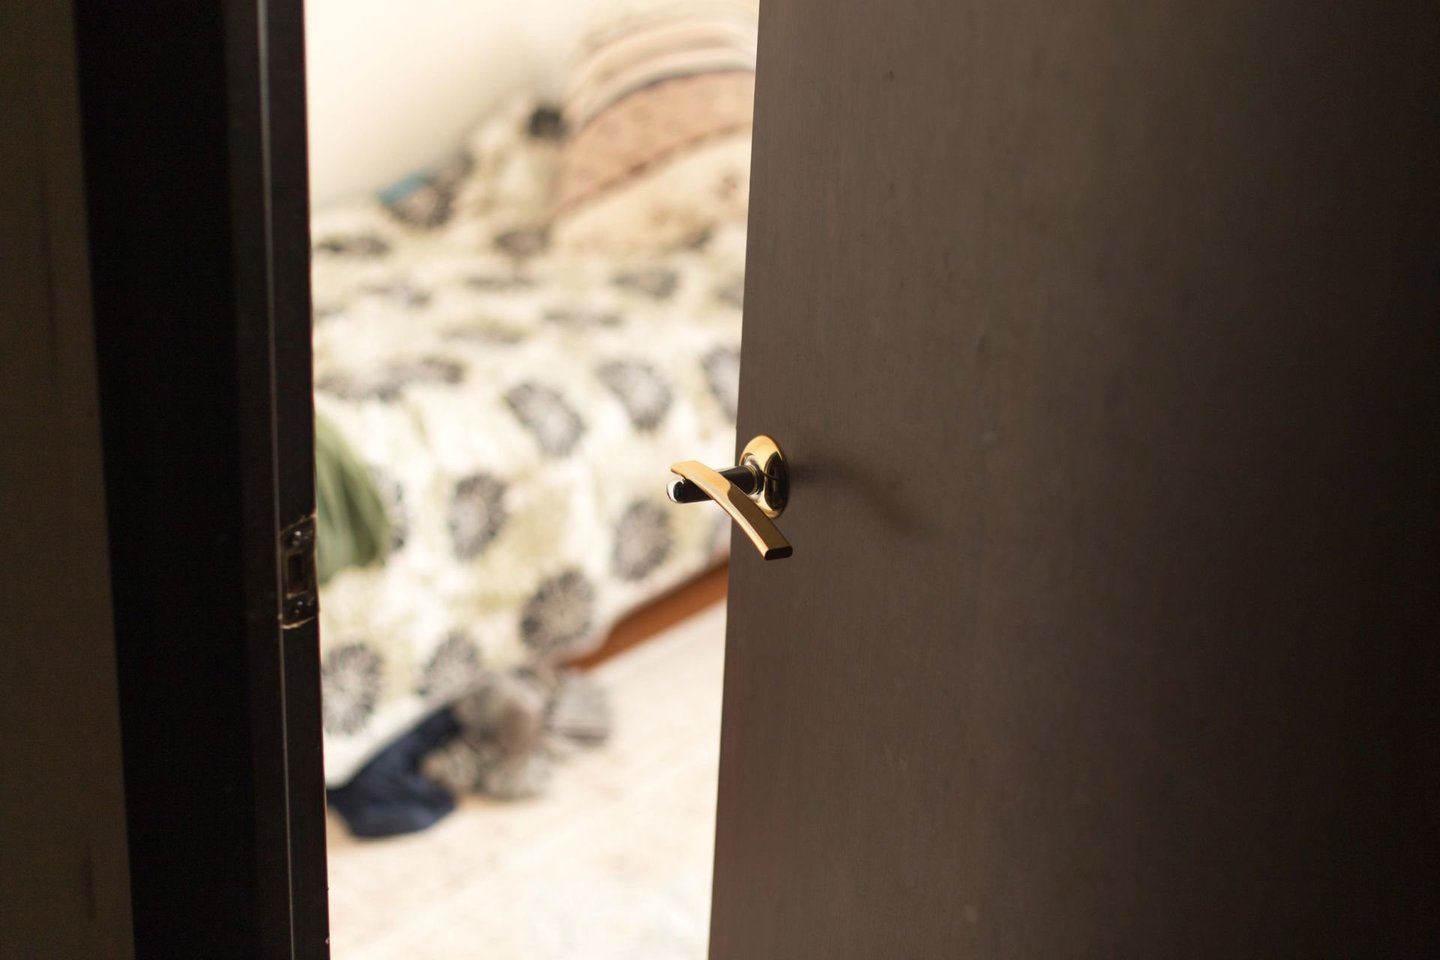 Daugelis prieš įlipdami į lovą pamiršta vieną gyvybiškai svarbų dalyką – uždaryti miegamojo duris.<br> 123rf nuotr.